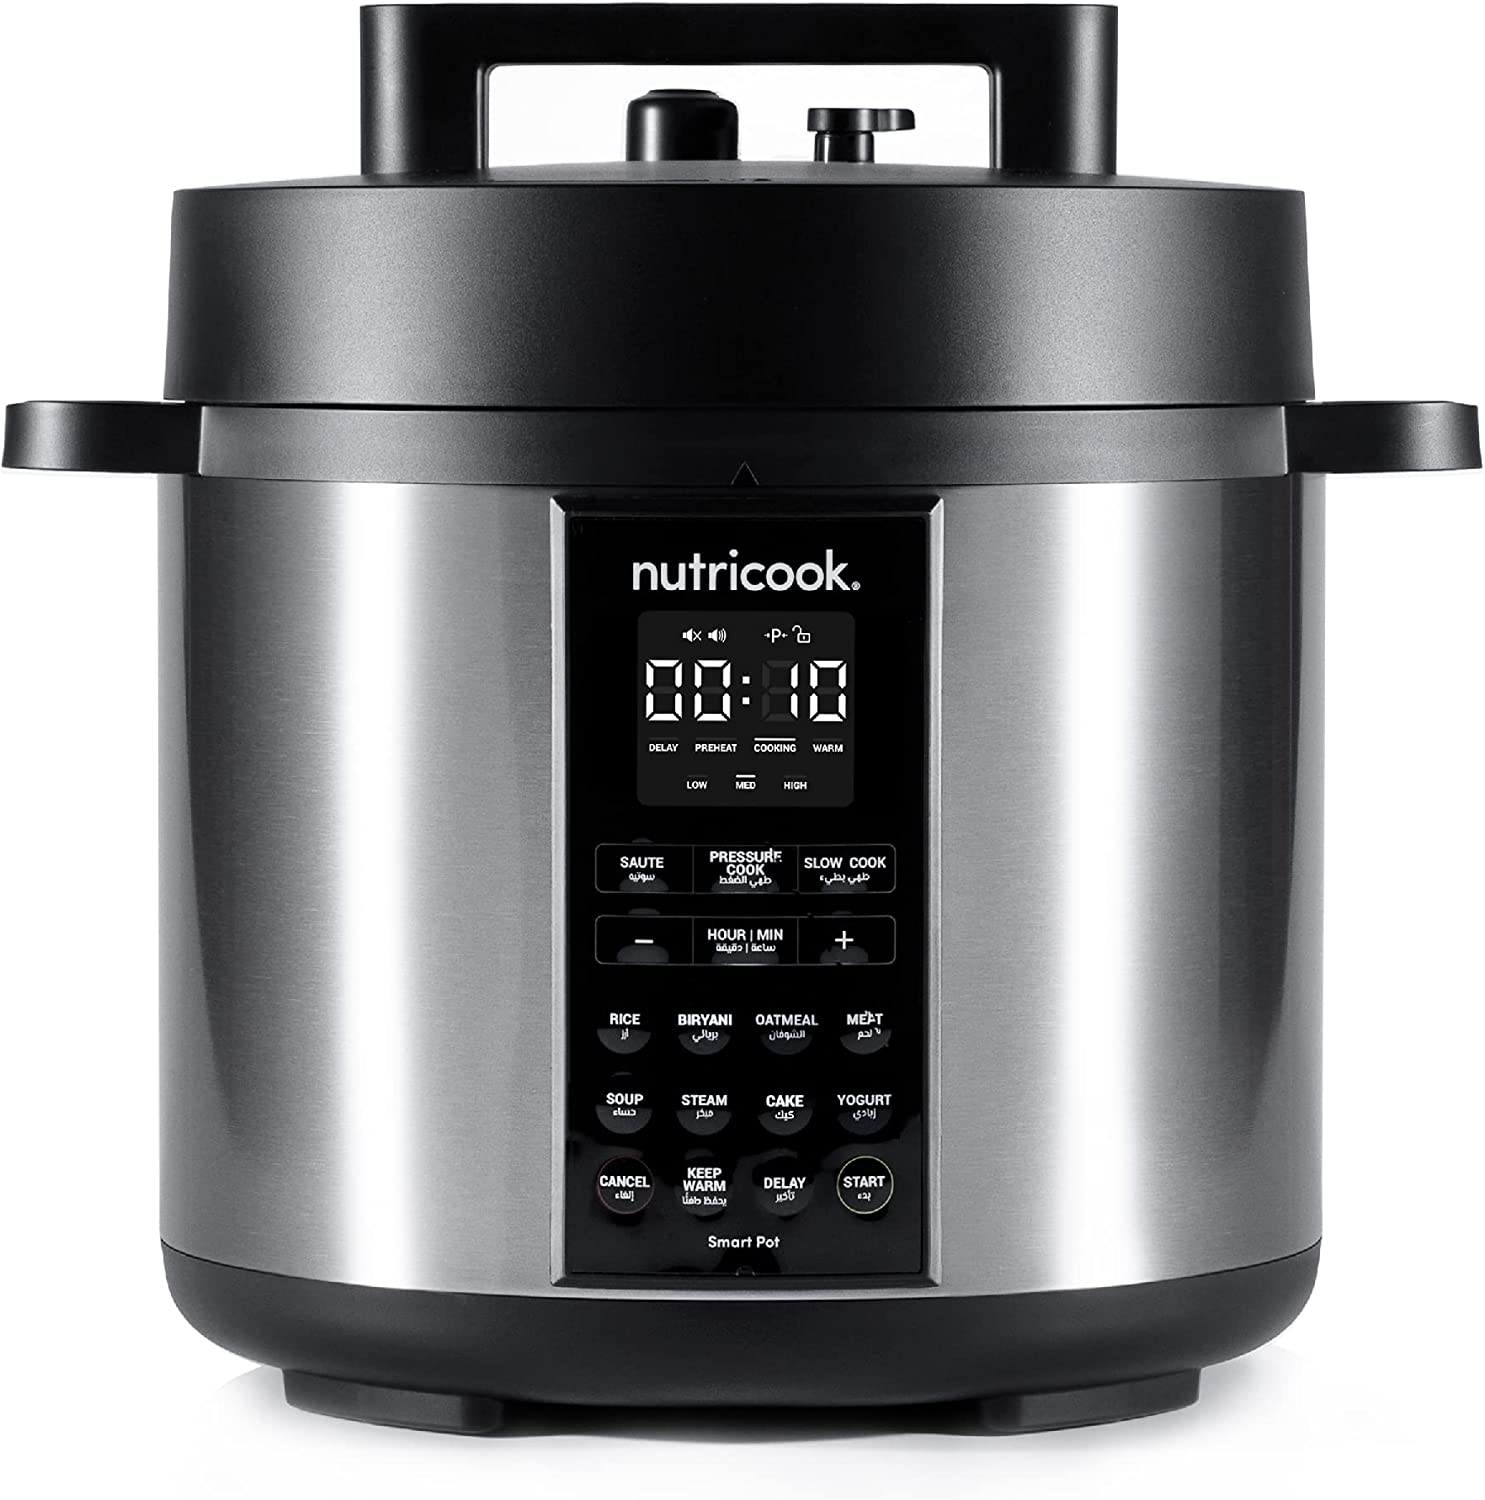 زودپز برقی نوتریکوک مدل Nutricook Smart Pot 2 1000 Watts 9 In 1 - ارسال ۱۰ الی ۱۵ روز کاری